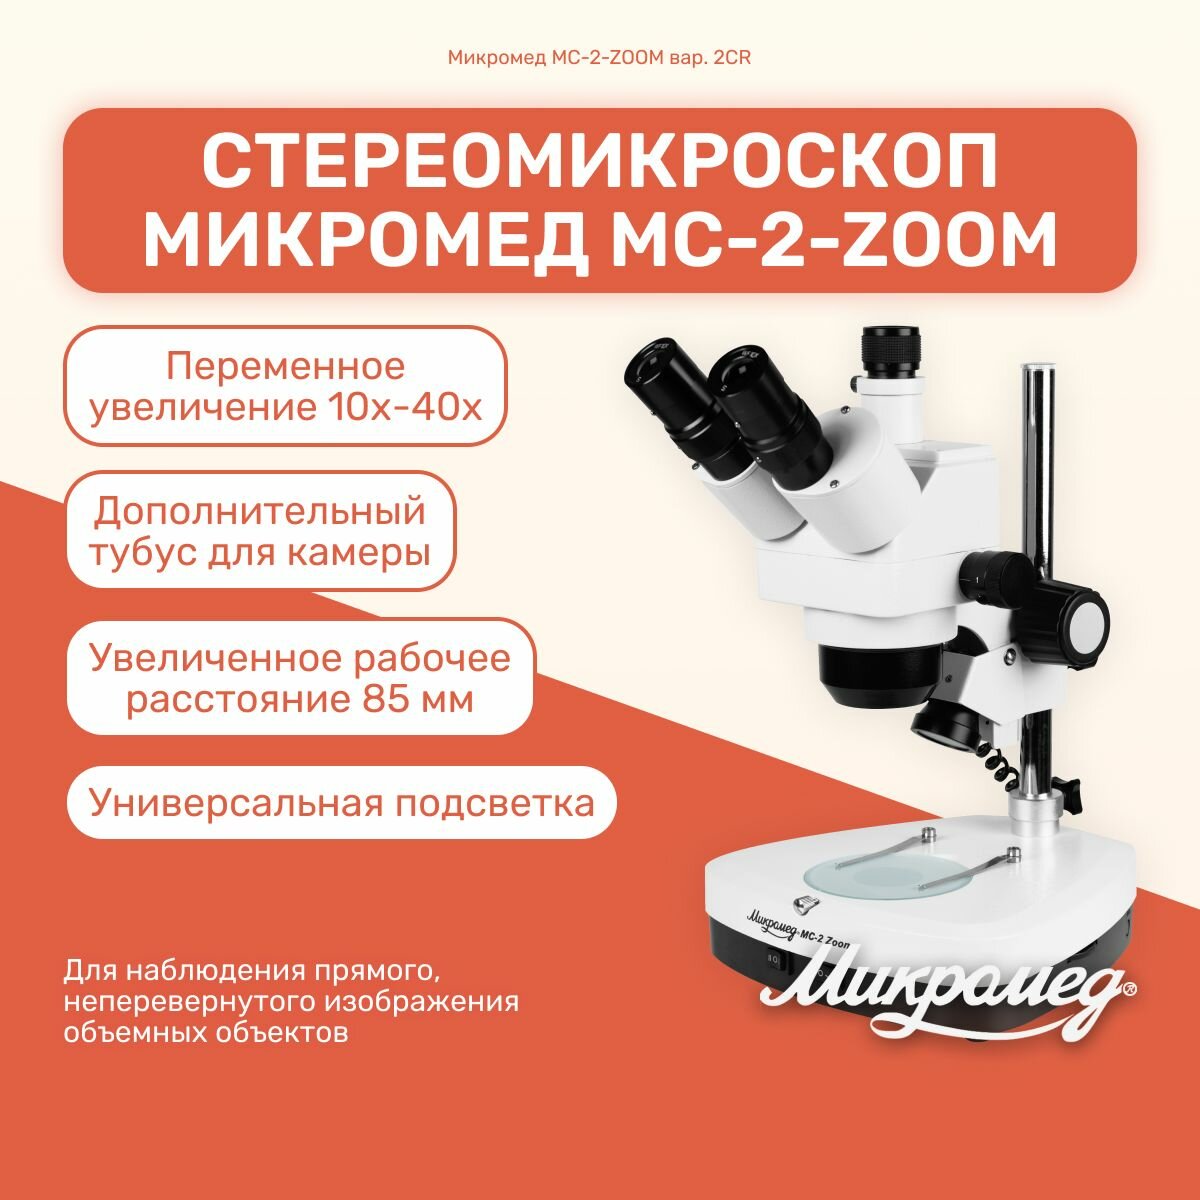 Микроскоп стерео Микромед МС-2-ZOOM вар.2CR лабораторный для исследований, профессиональный, металлический